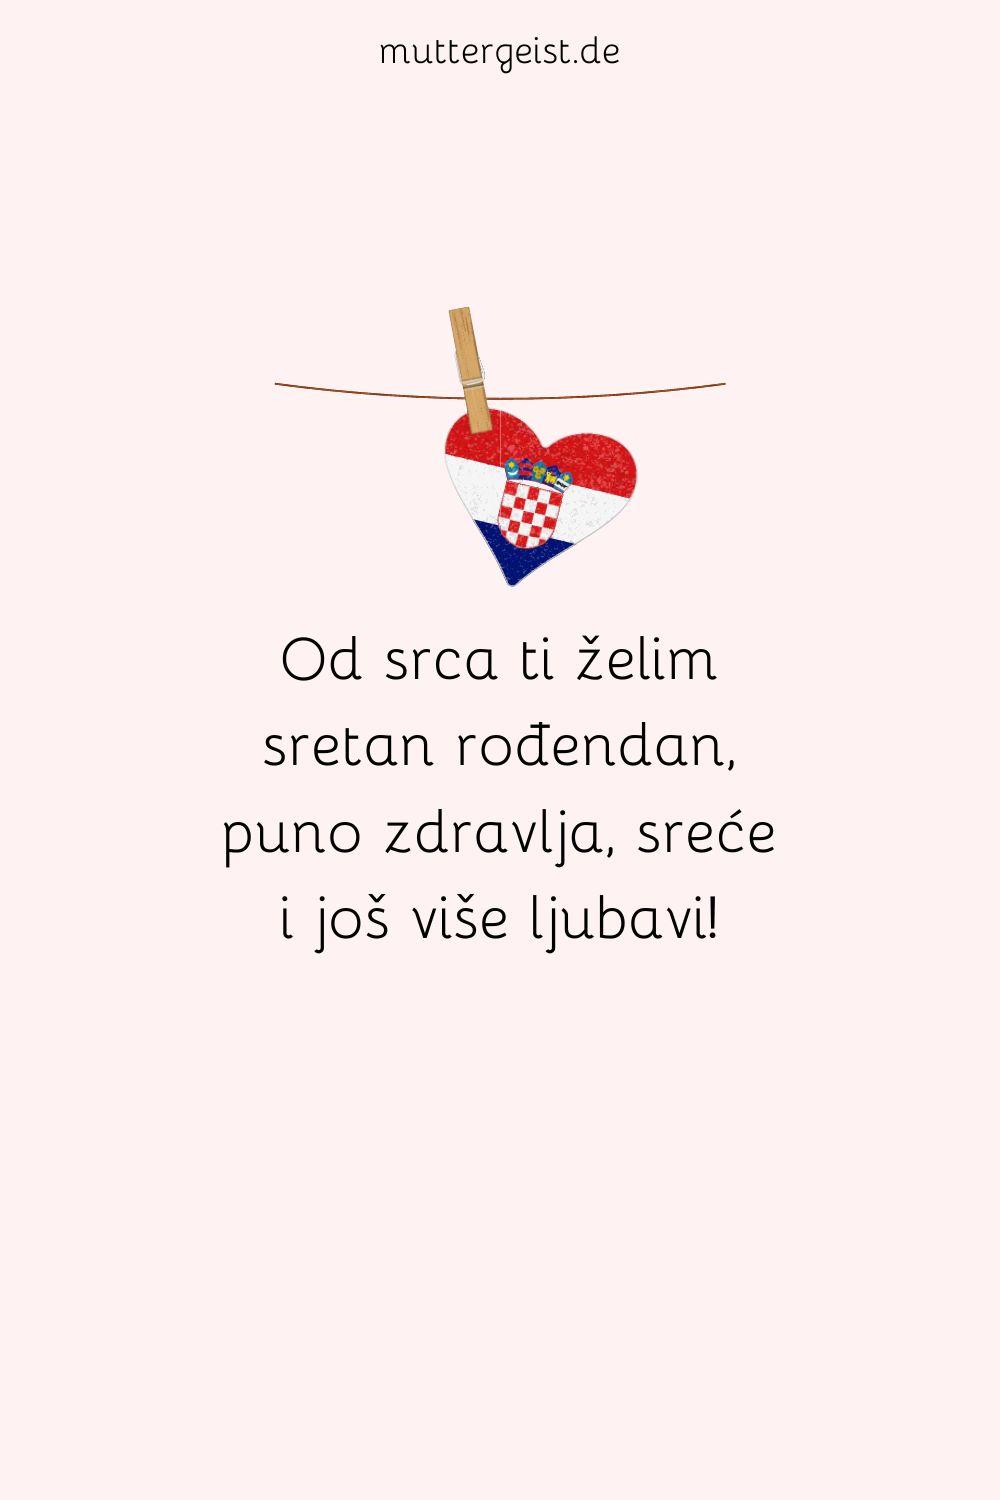 Geburtstagsspruch auf kroatisch